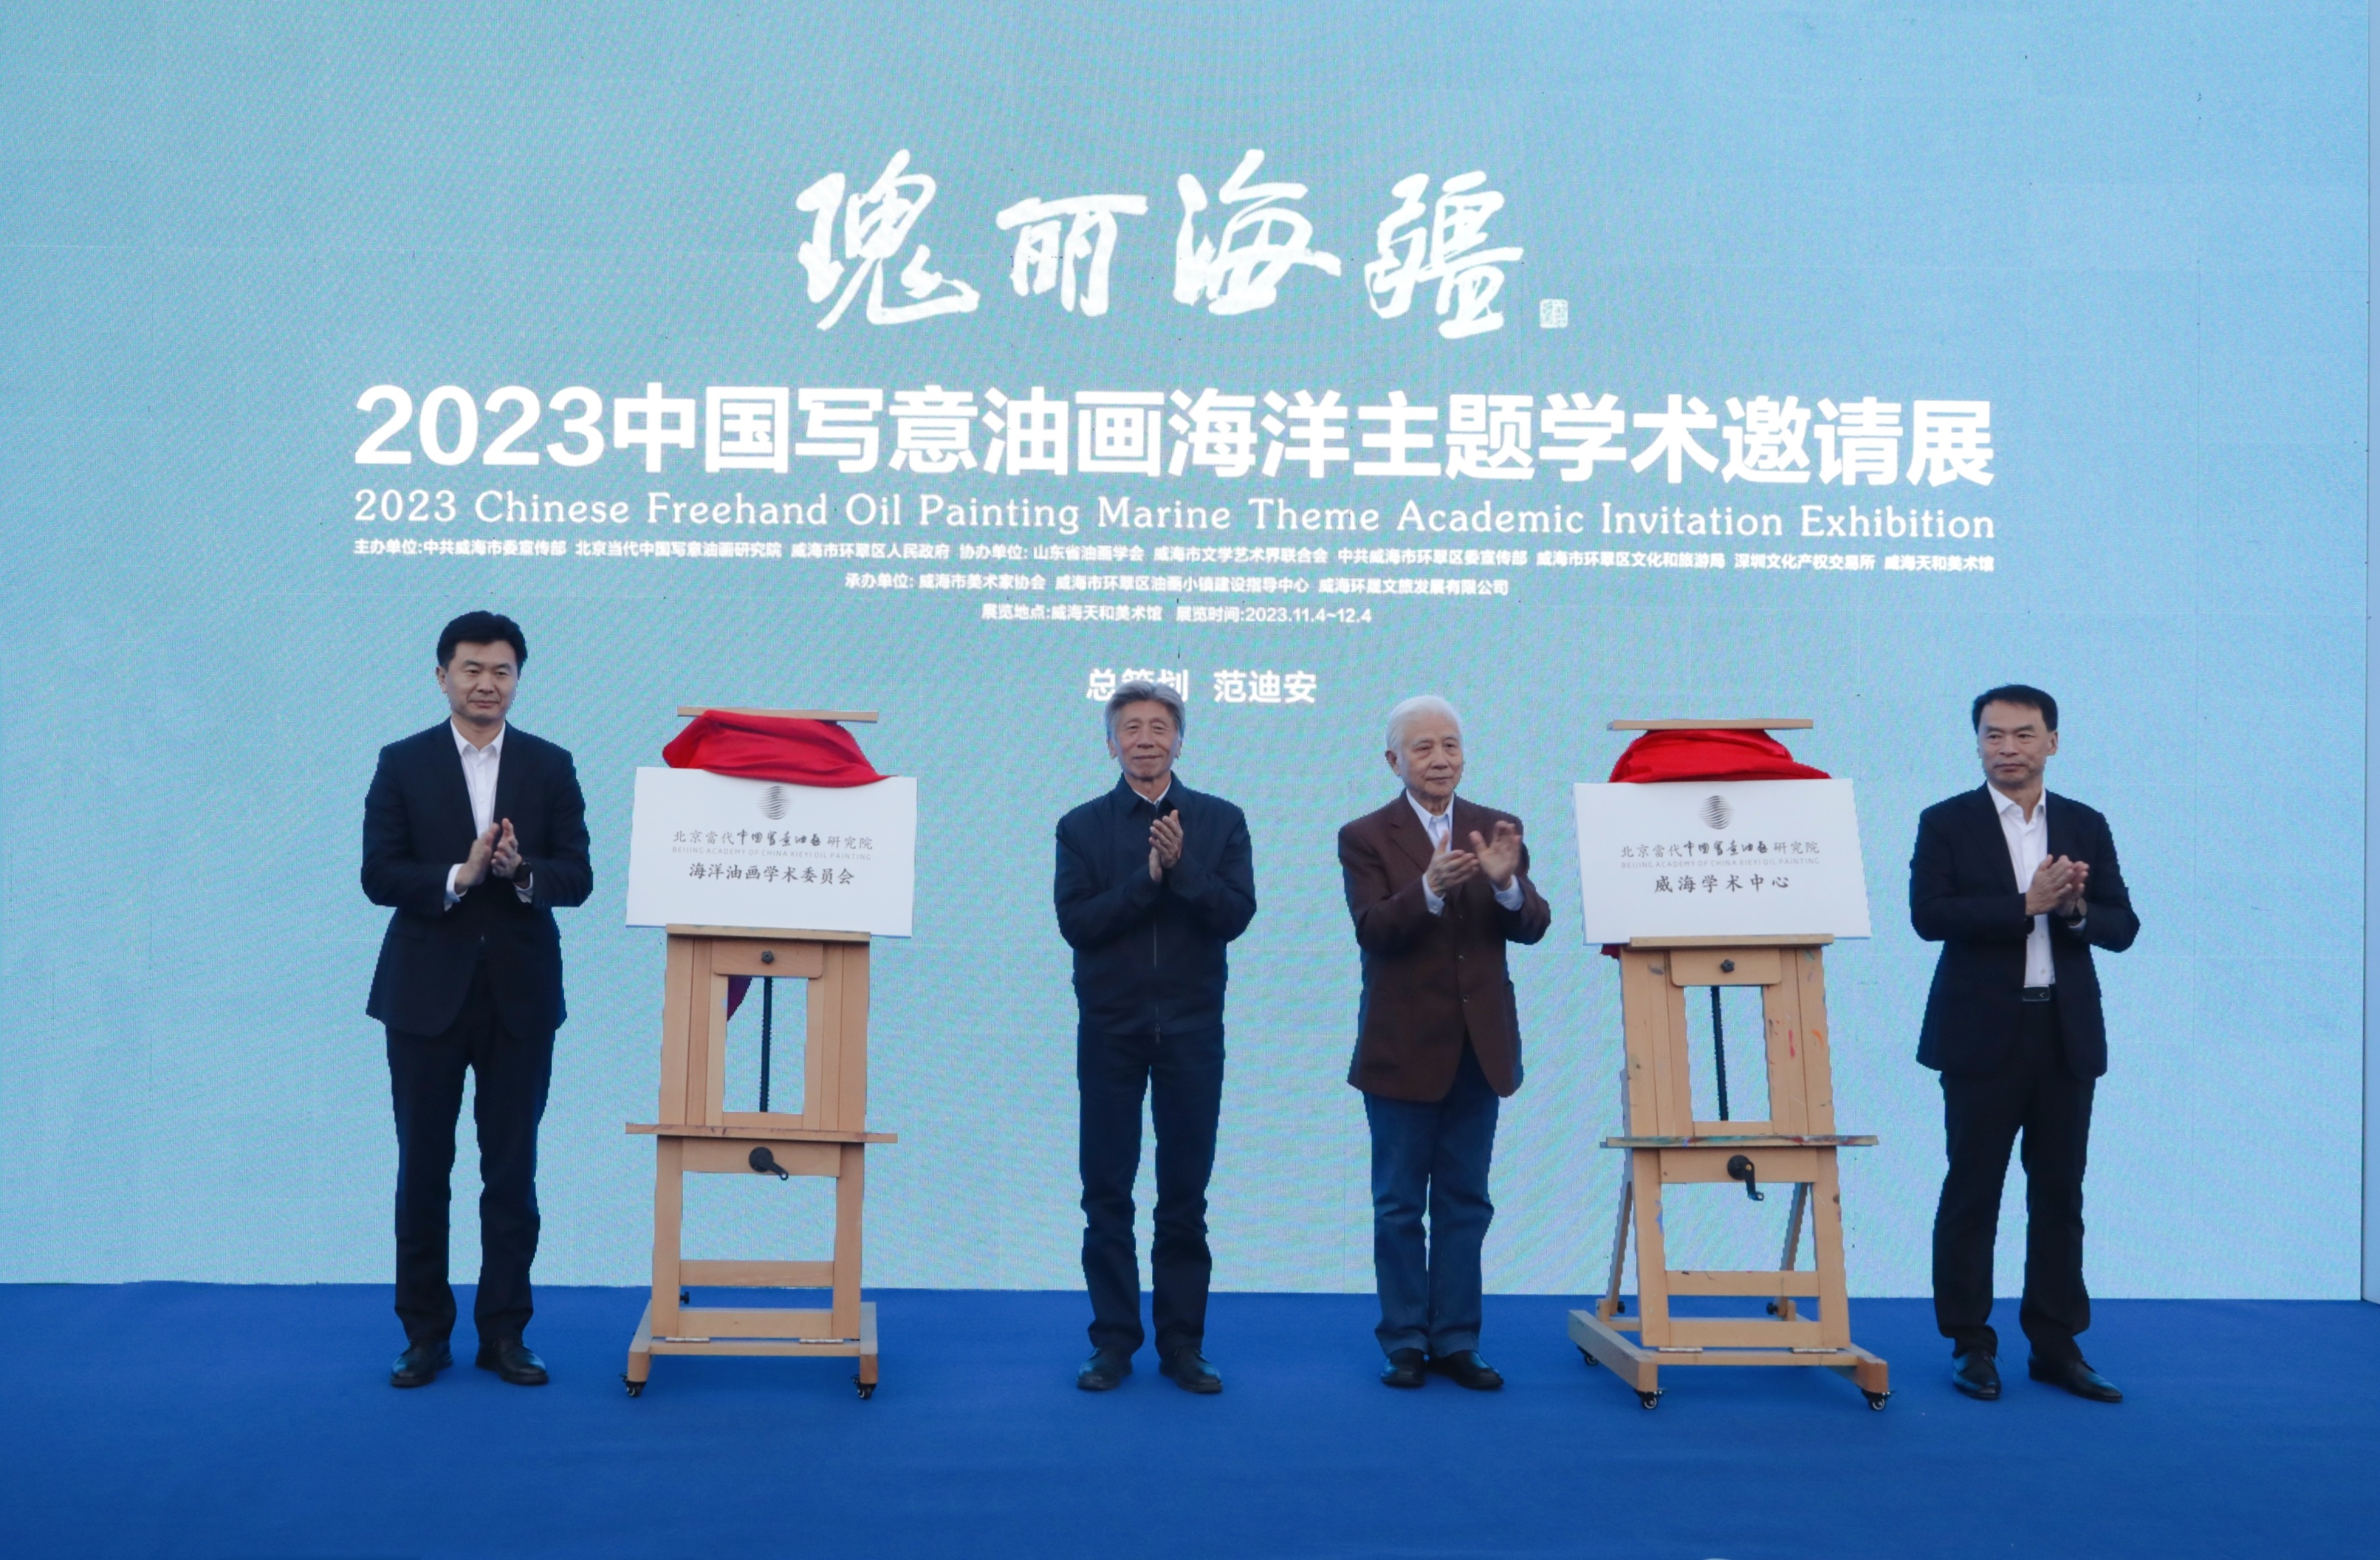 “瑰丽海疆——2023中国写意油画海洋主题学术邀请展”开幕